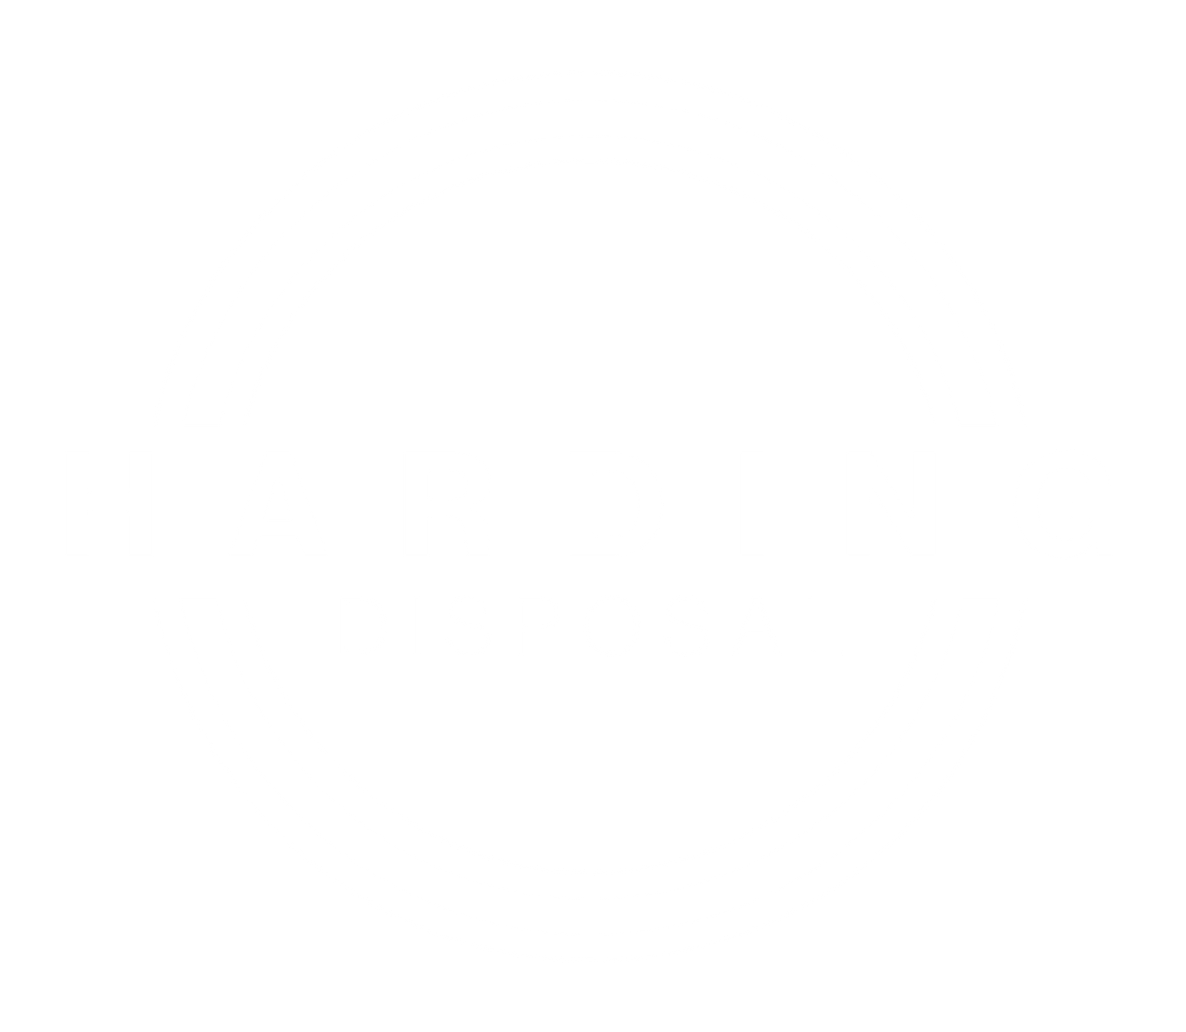 Harding Disposal business logo